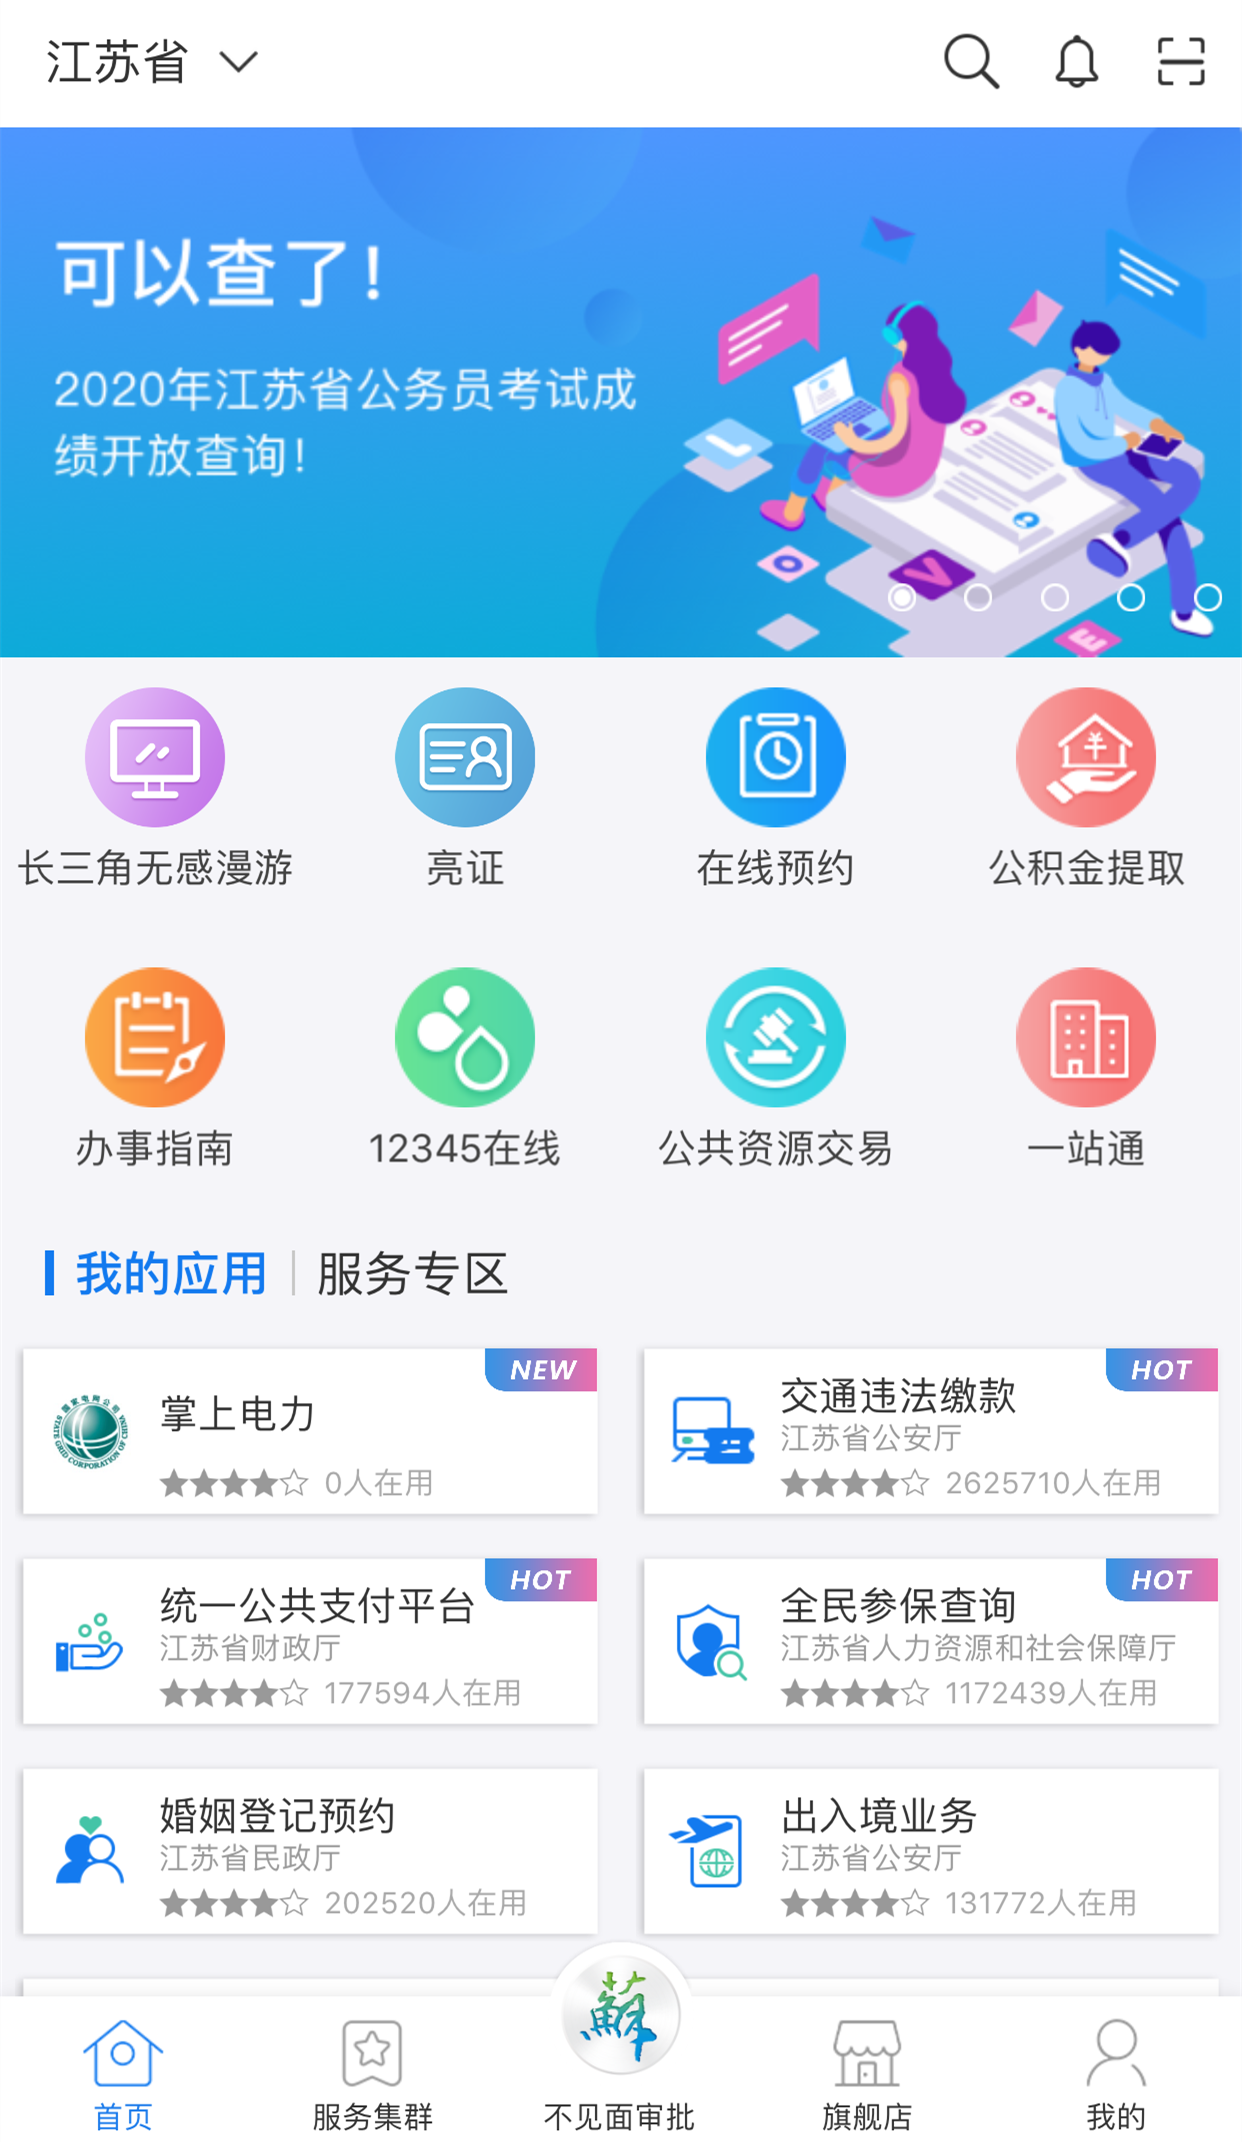 2020年江苏省公务员笔试最低分数线划定,上江苏政务服务app一键查